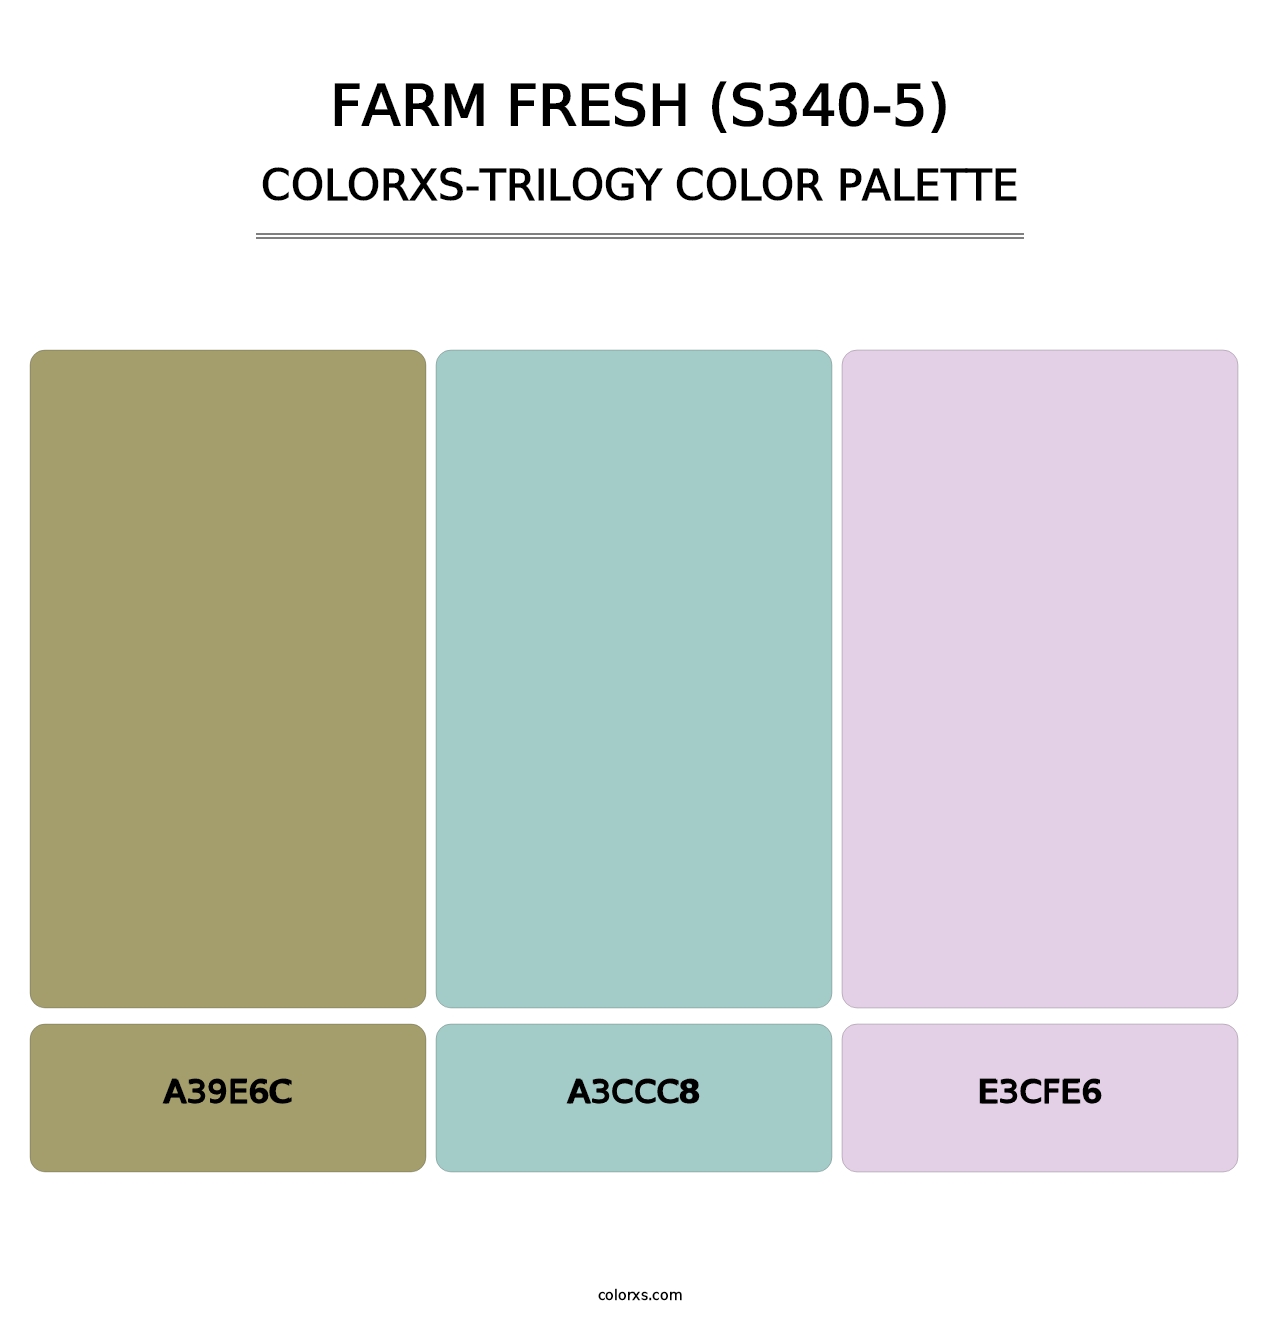 Farm Fresh (S340-5) - Colorxs Trilogy Palette